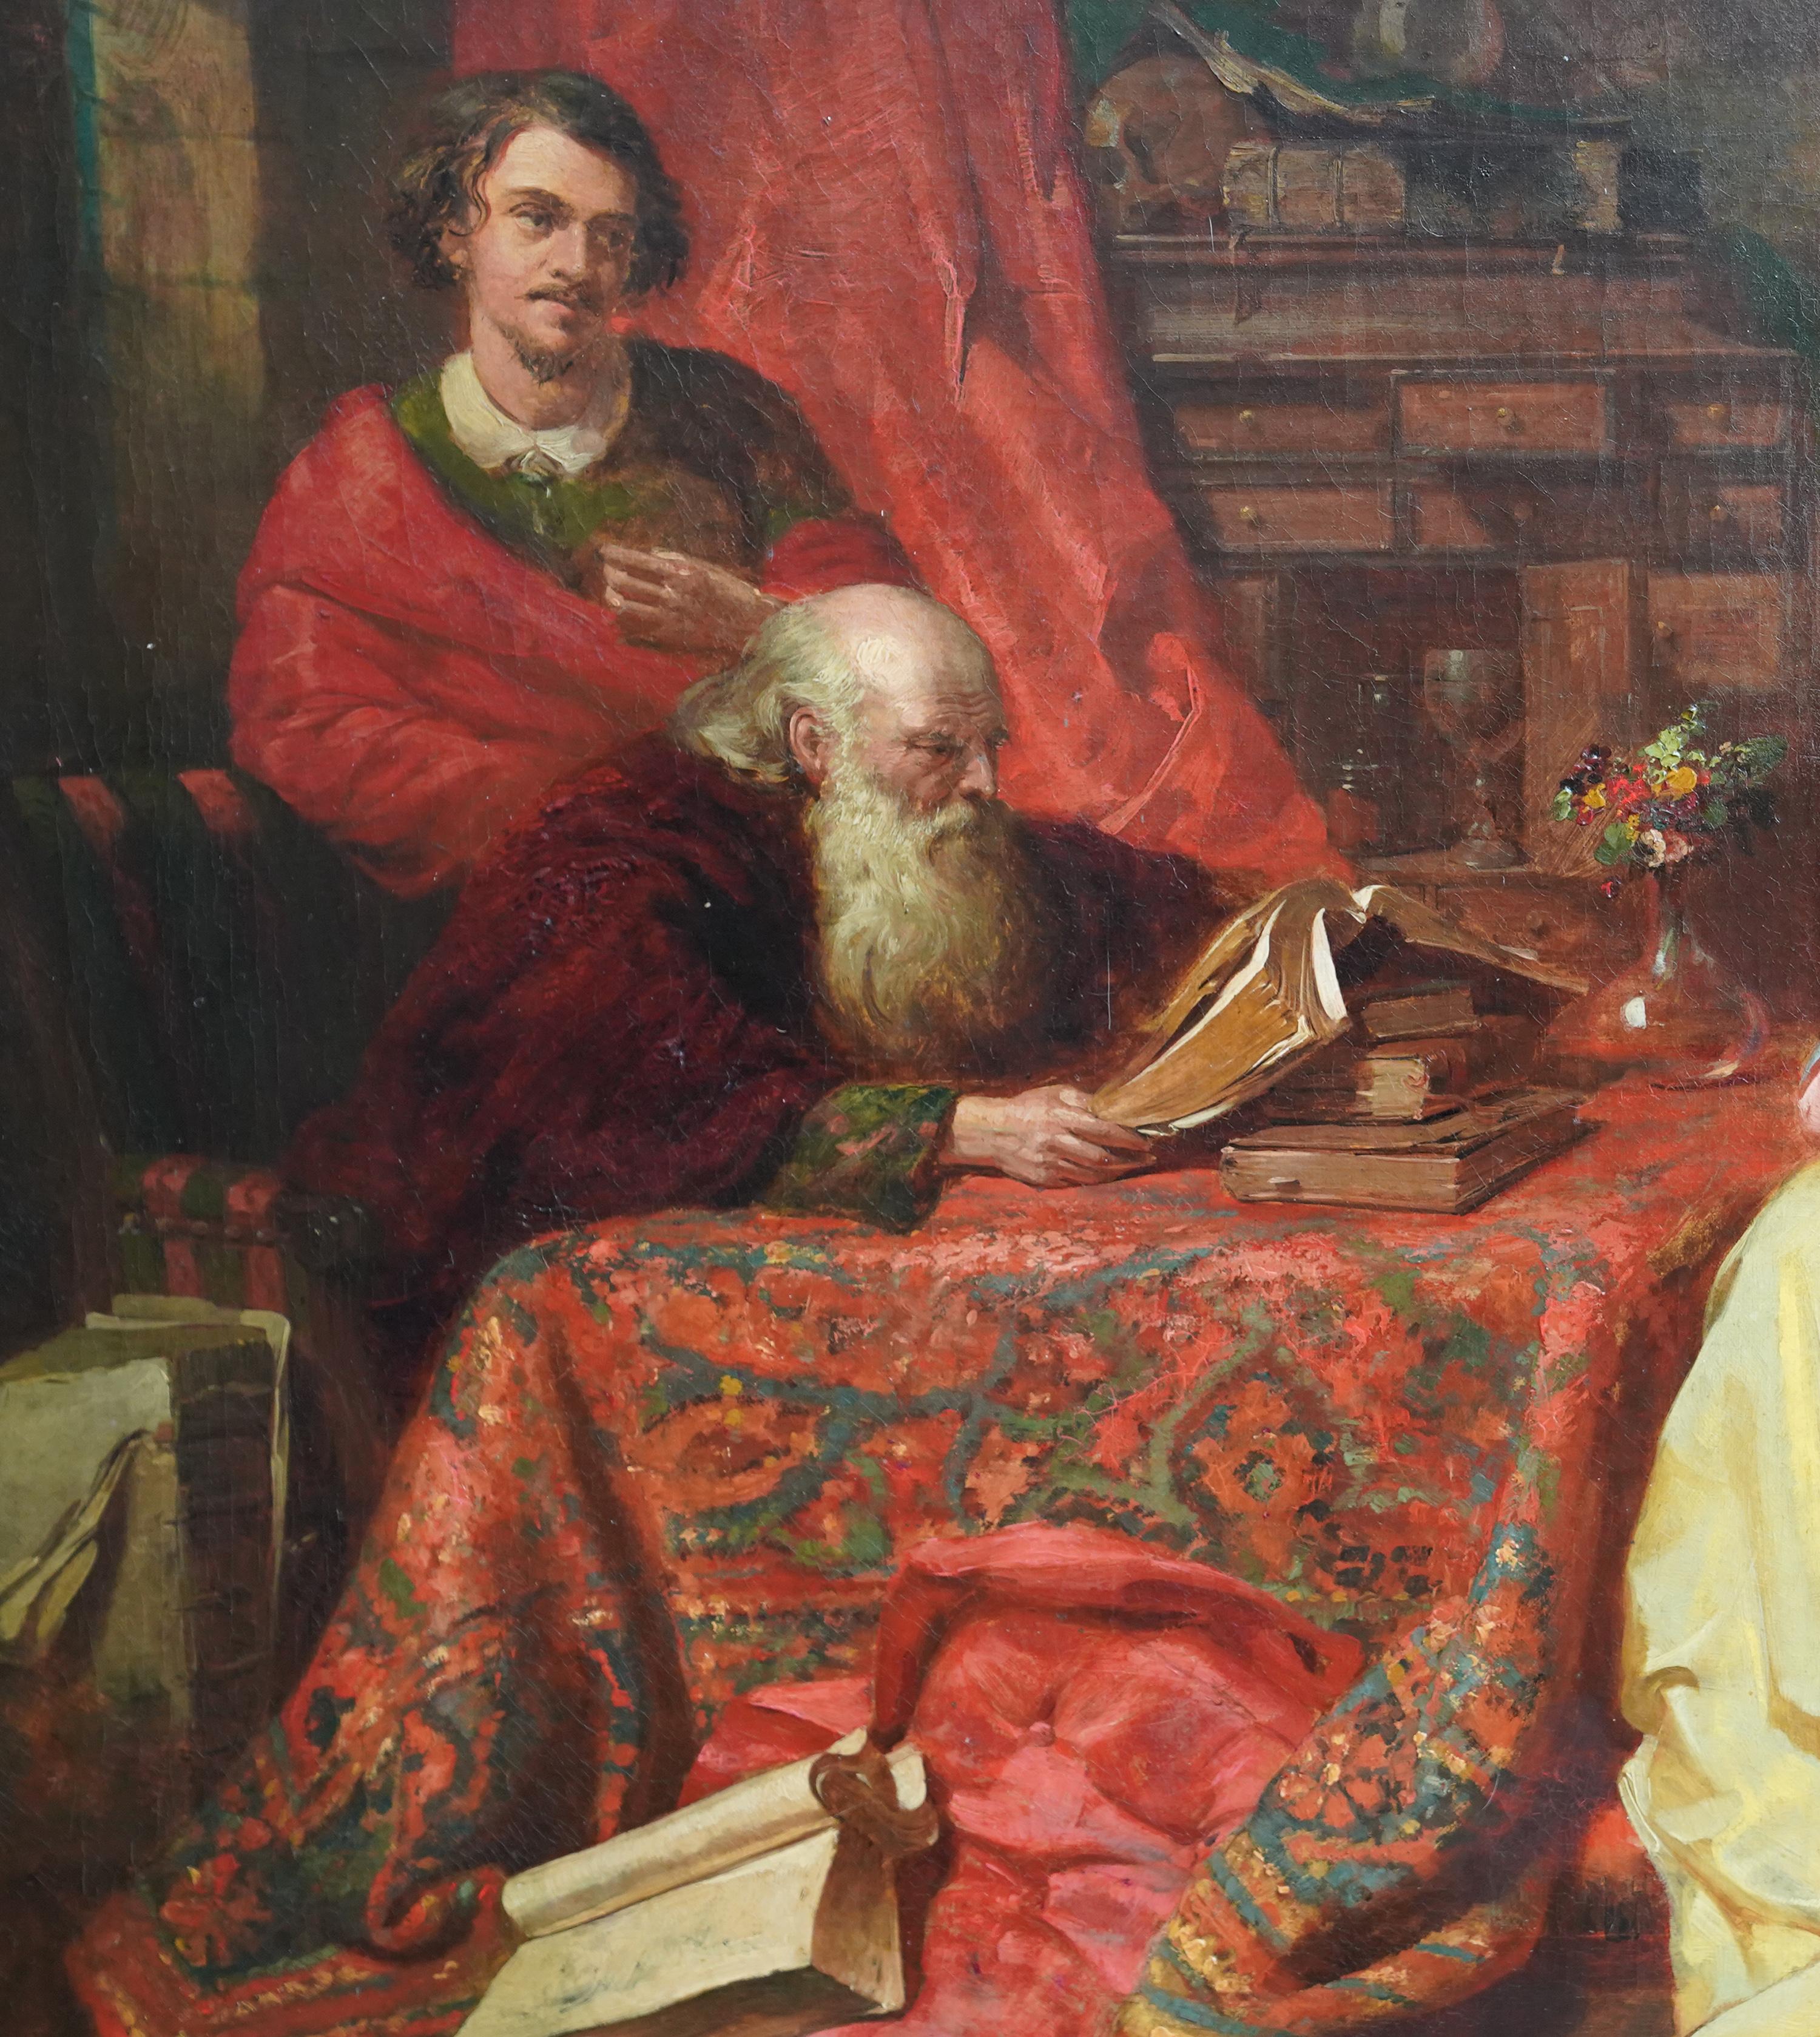 Dieses schöne britisch-viktorianische Ölgemälde stammt von dem bekannten Künstler John Eaton Walker. Es wurde um 1855 gemalt und zeigt das Porträt einer schönen jungen Frau in einem gelben Satinkleid. Sie sitzt an einem Tisch und lässt sich von